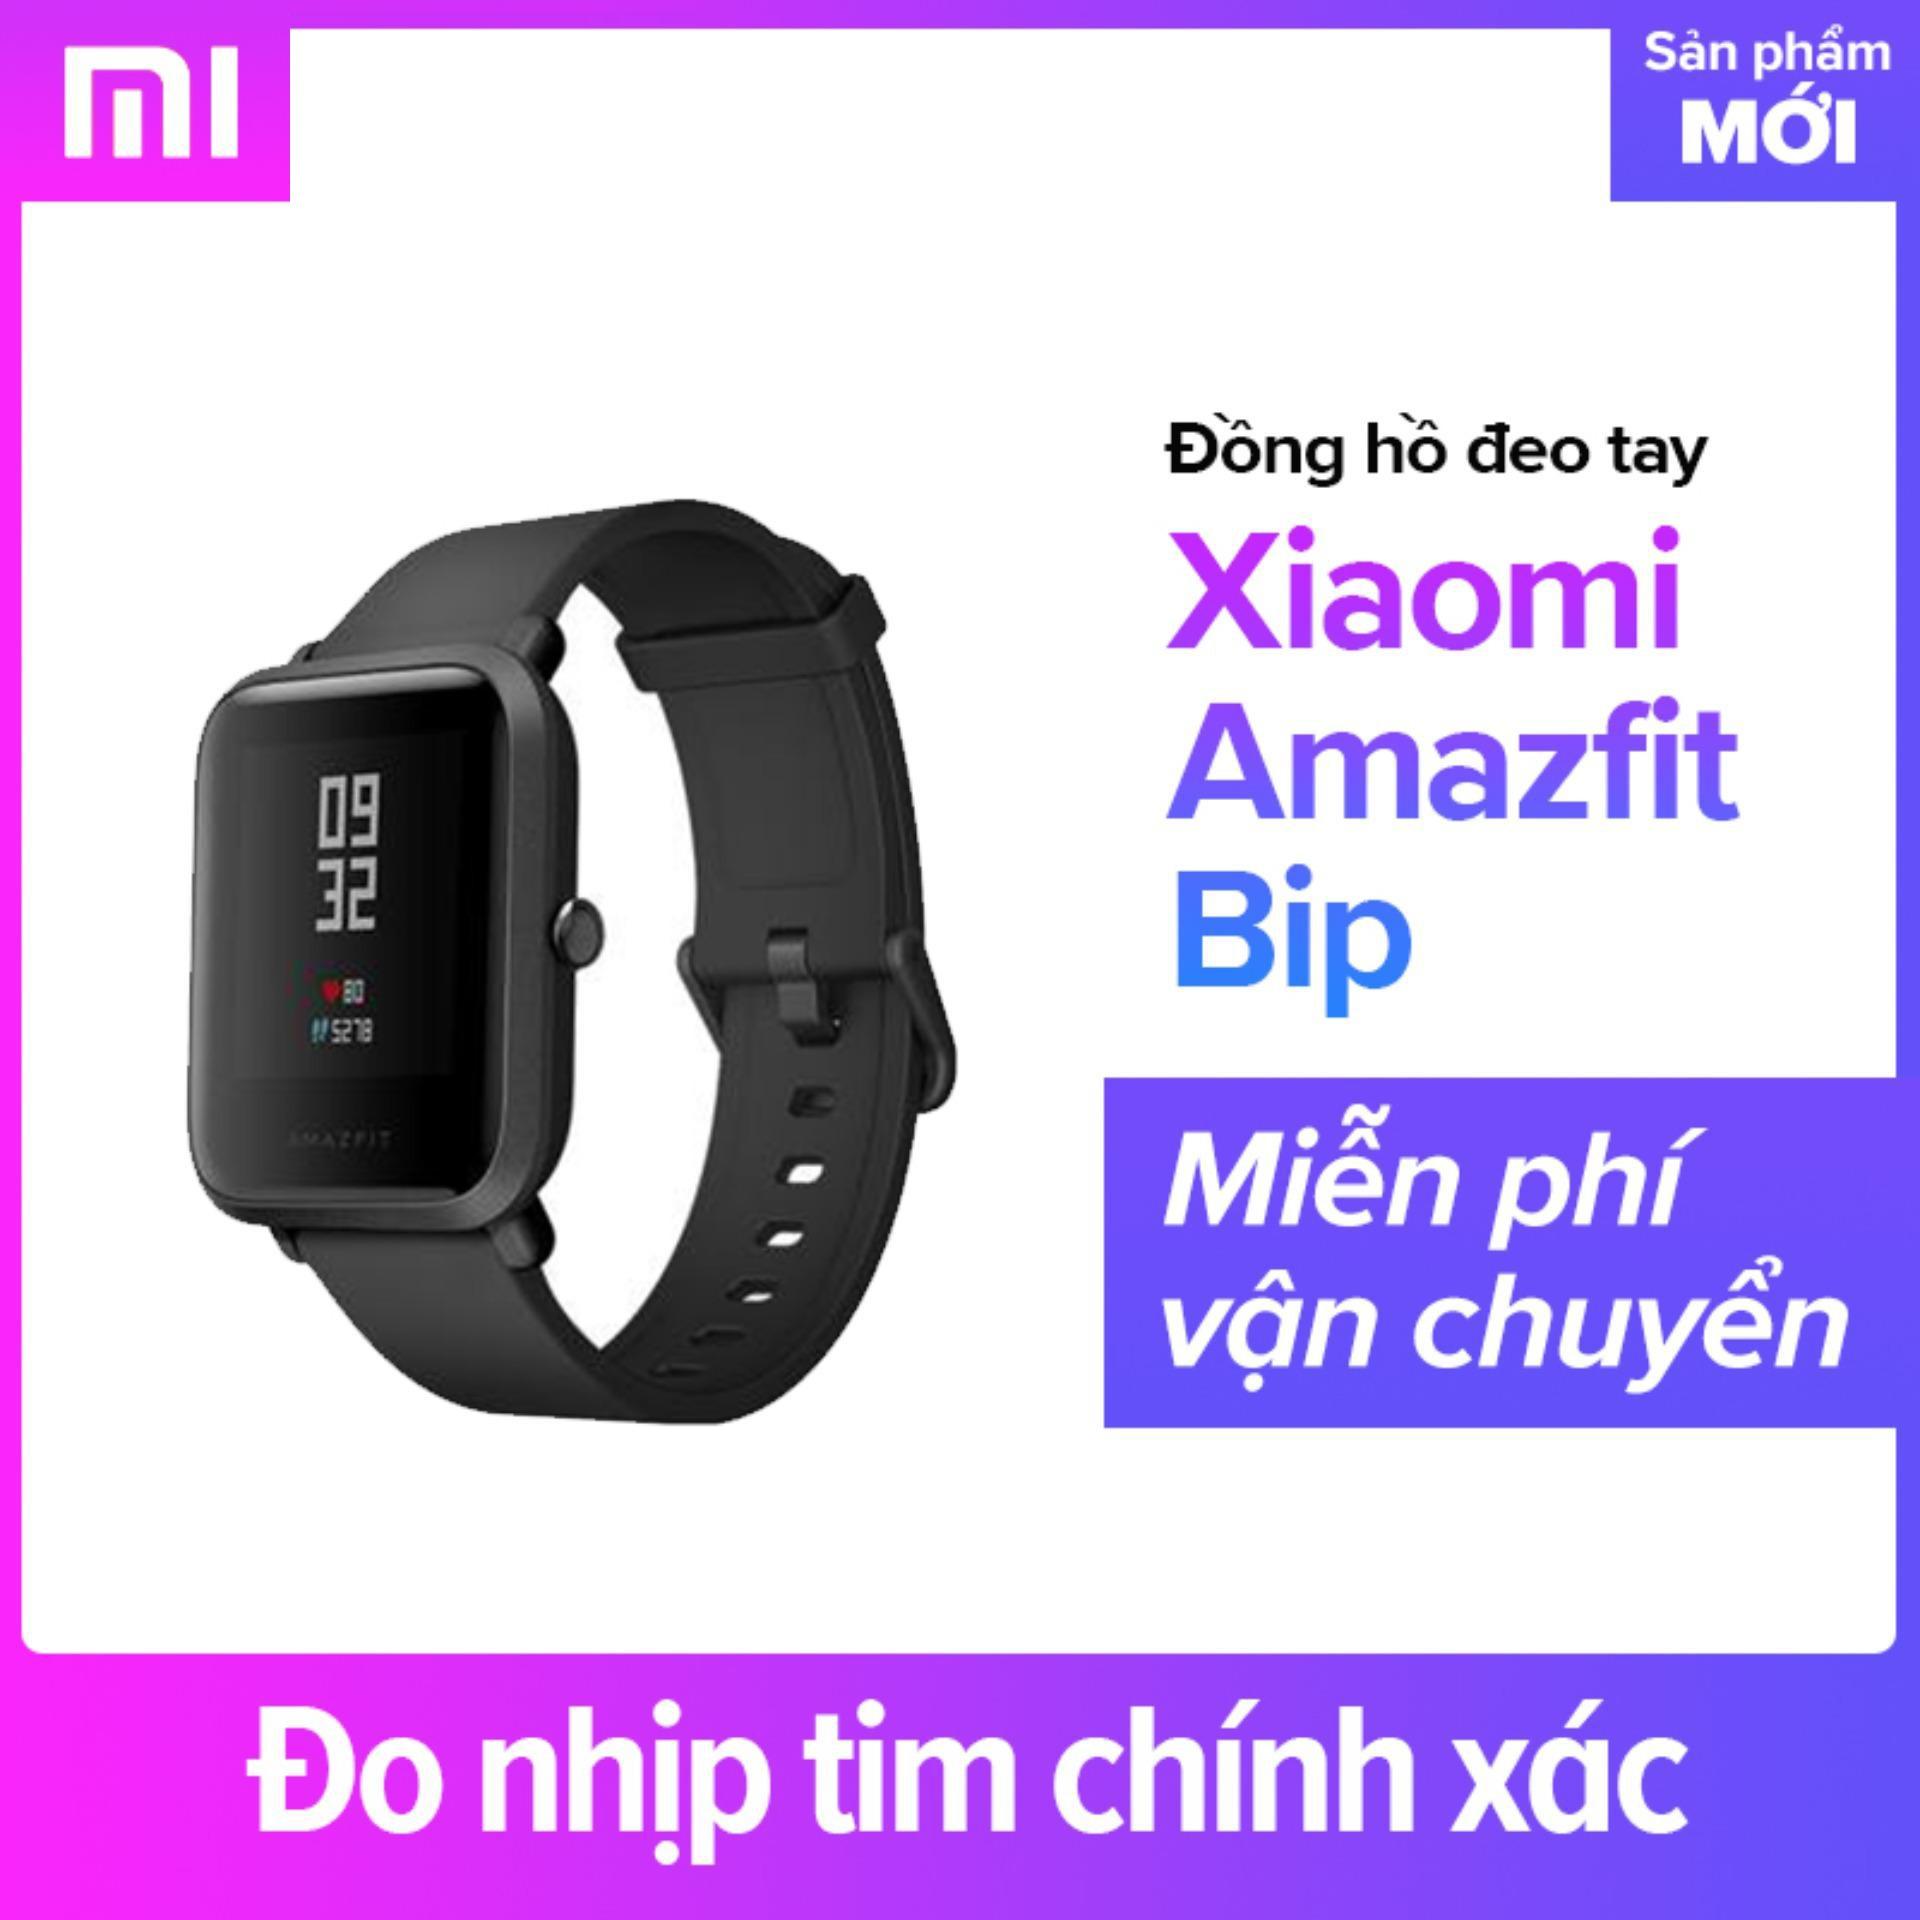 Đồng hồ đeo tay thông minh Xiaomi Amazfit Bip - Hãng phân phối chính thức